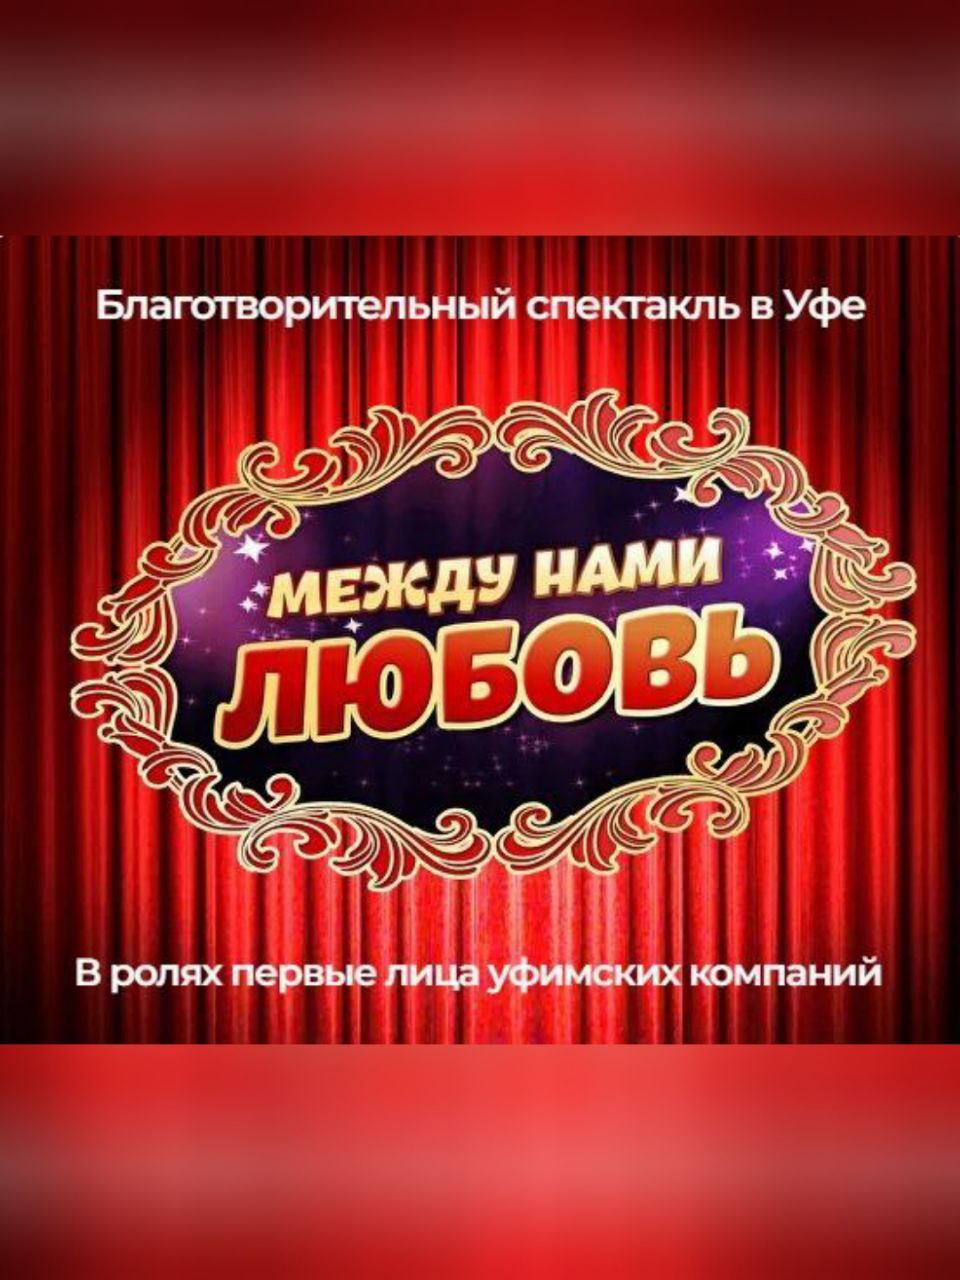 Башкирский министр здравоохранения сыграет Посейдона в спектакле